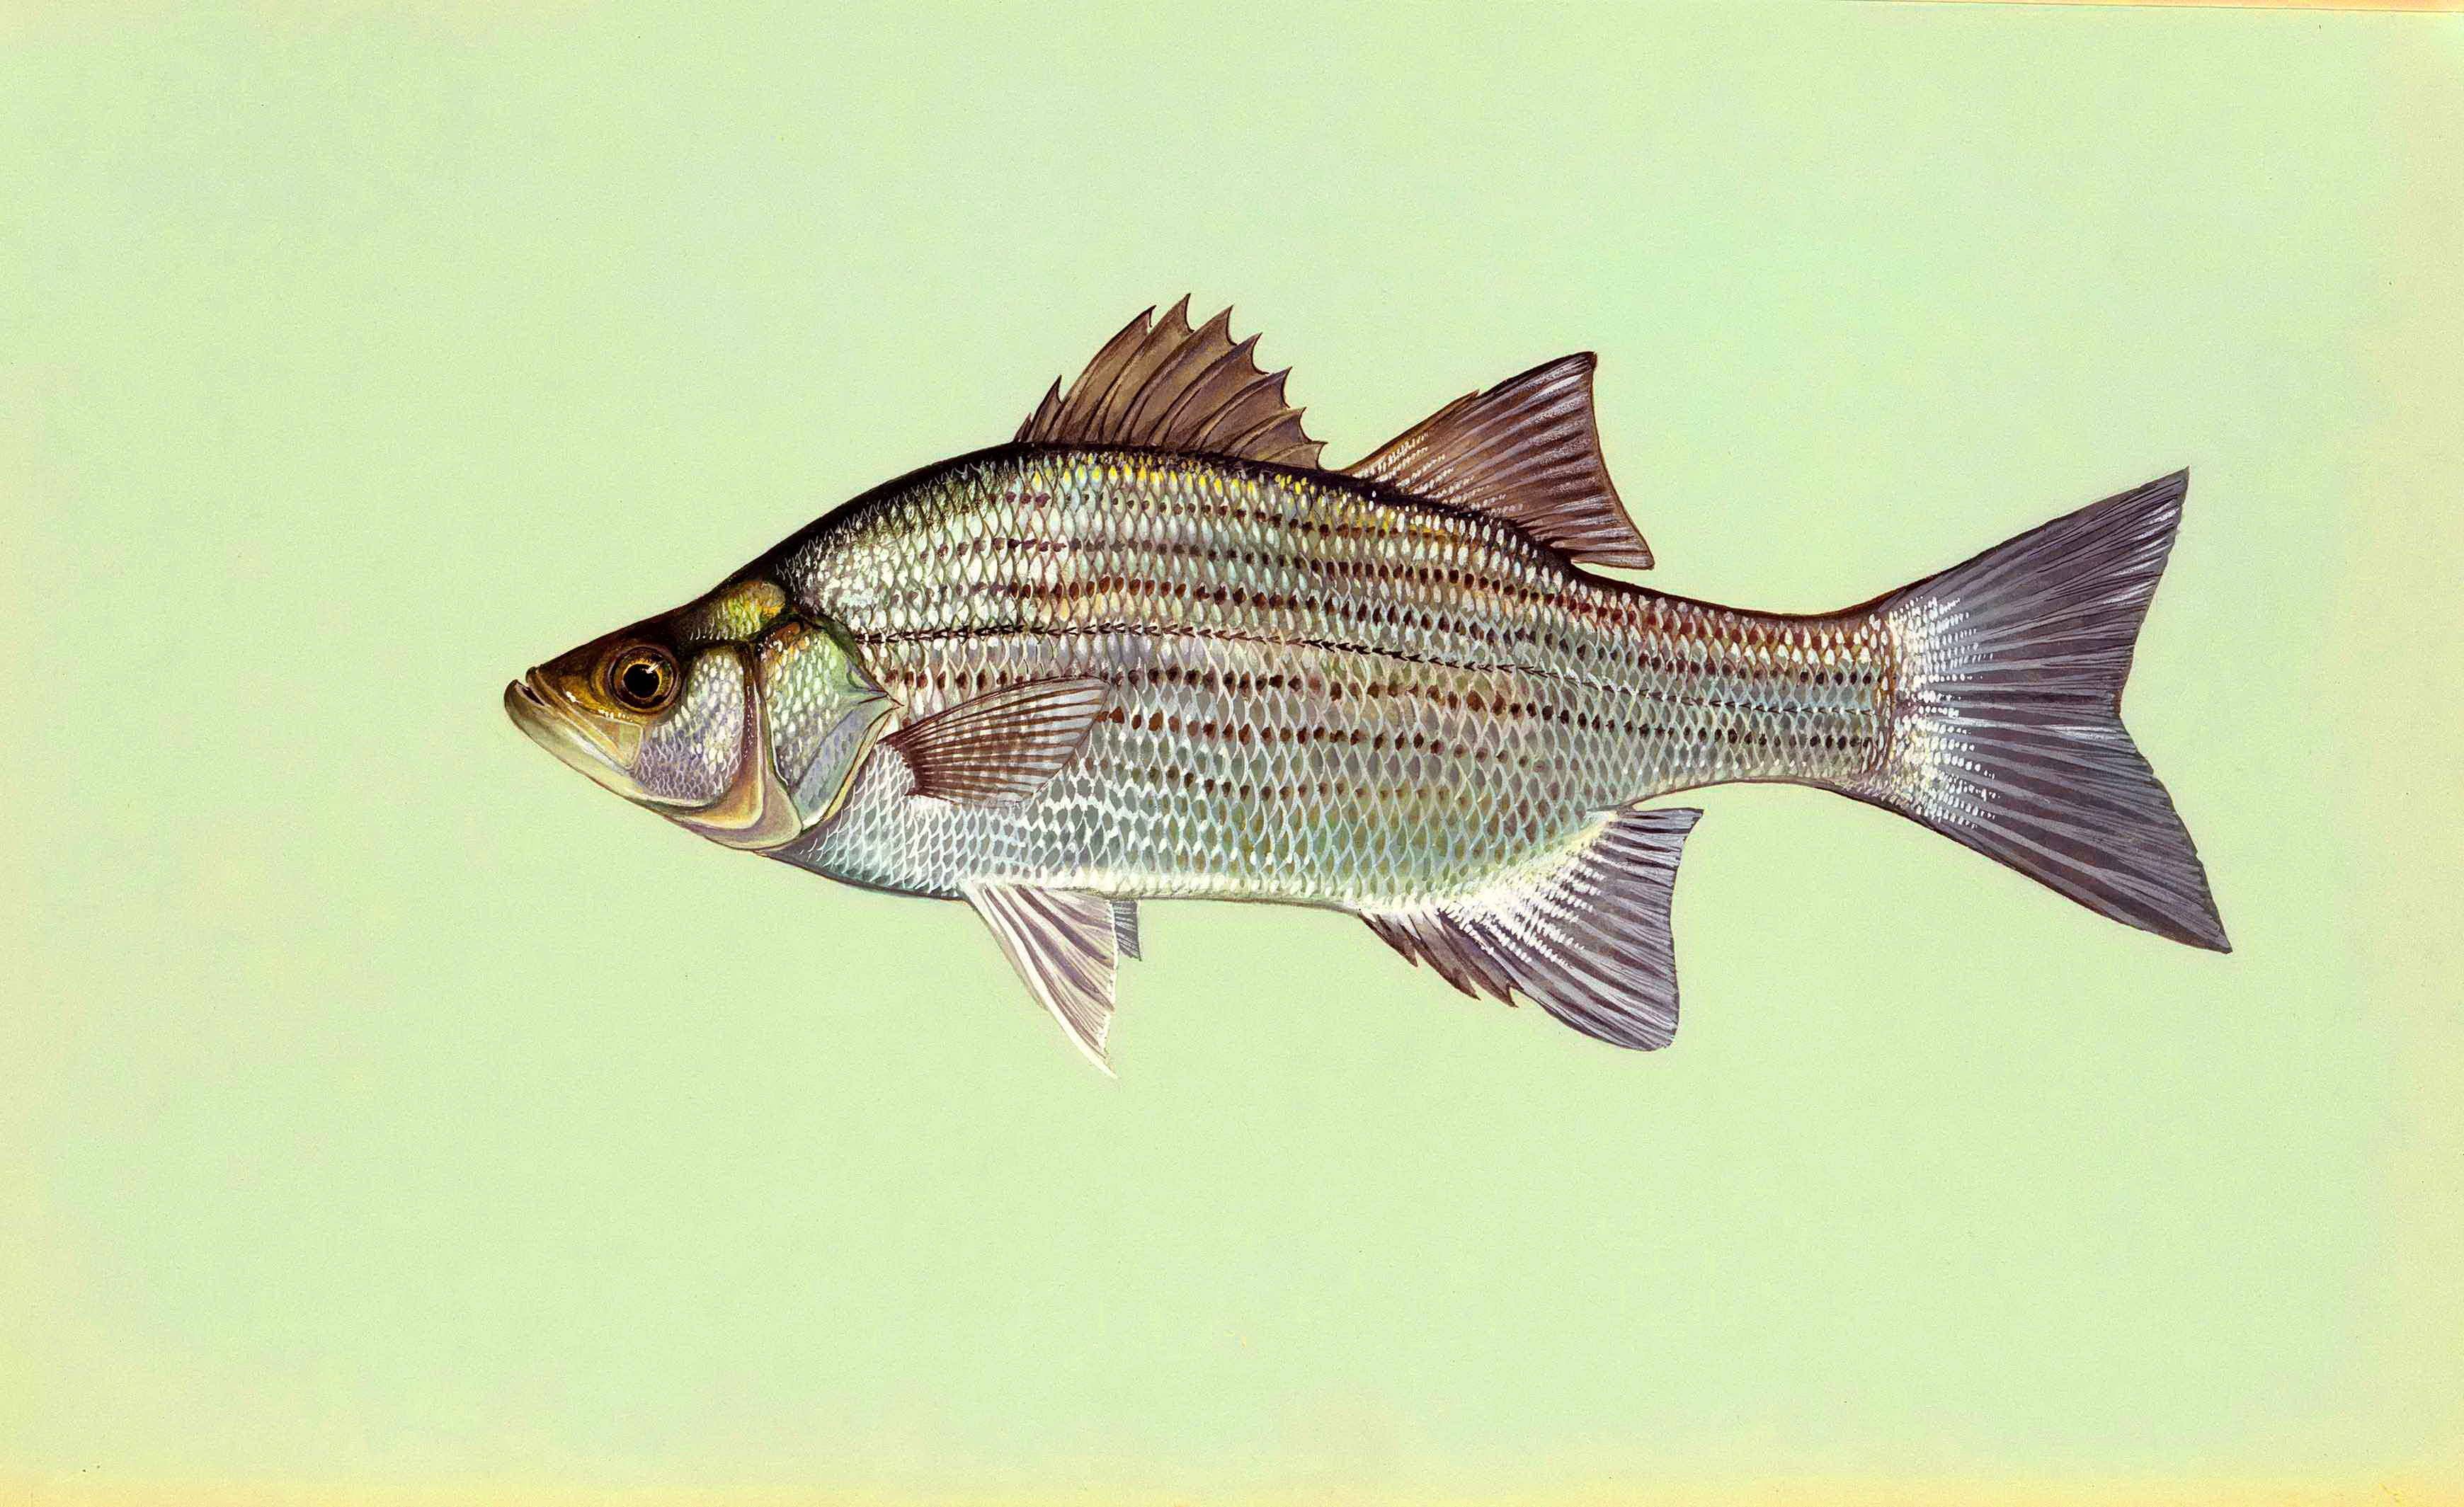 Басс прибрежный фото и описание – каталог рыб, смотреть онлайн